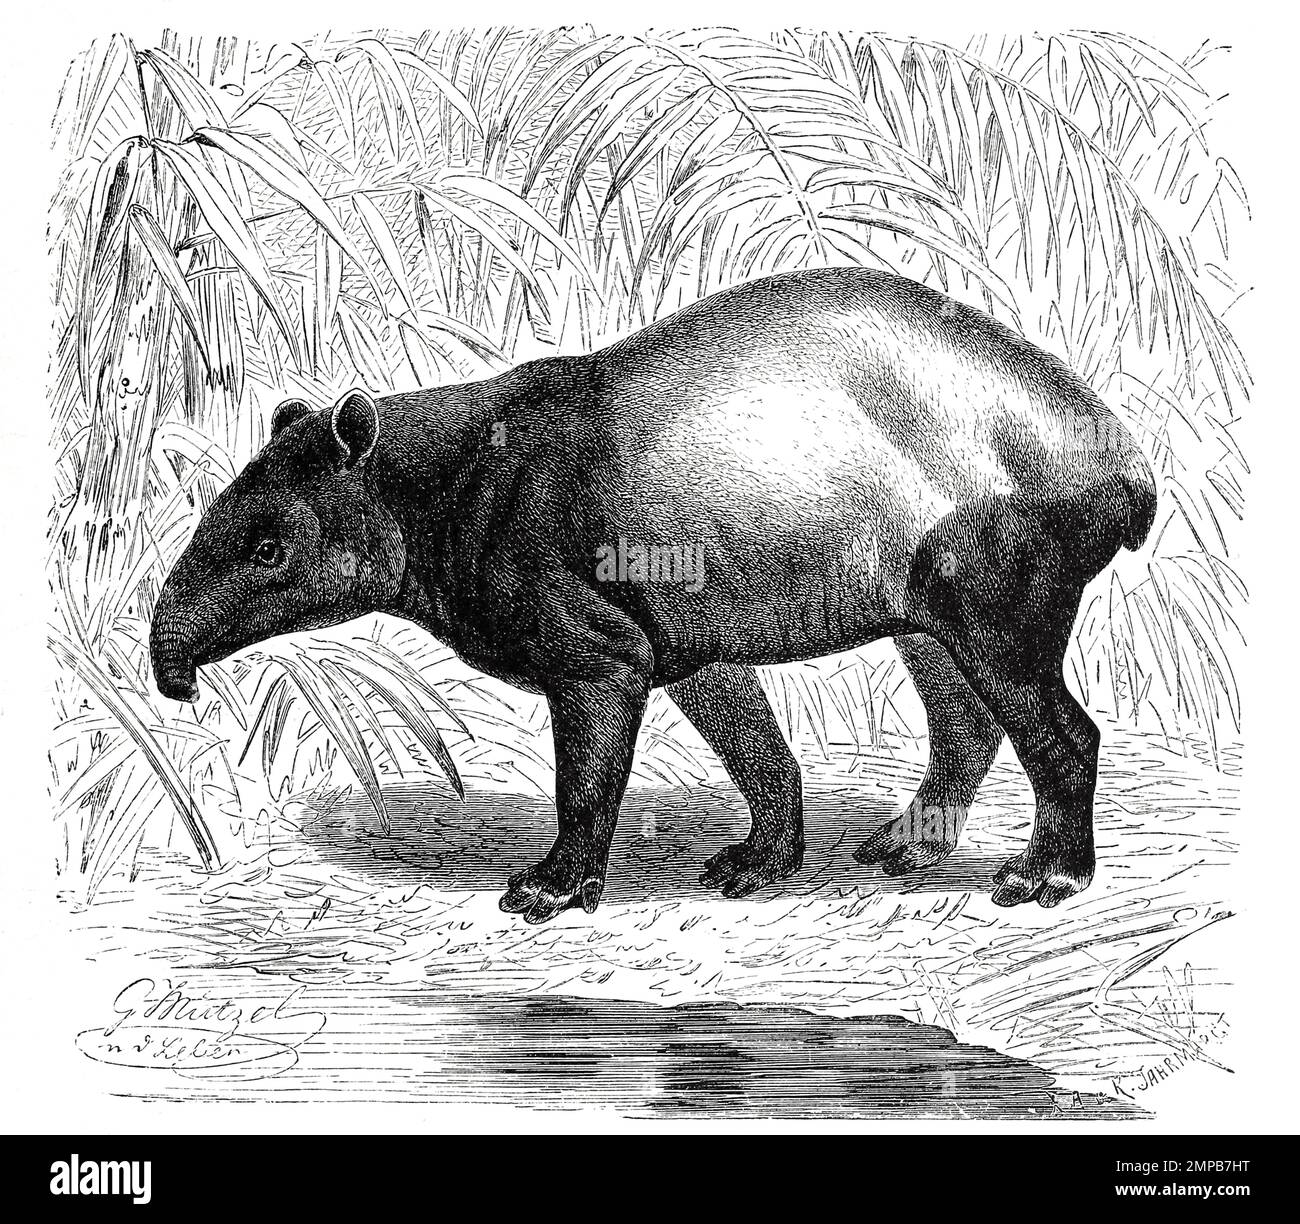 Schabrackentapir, auch Asiatischer oder Malaysischer Tapir, Tapirus indicus, ist eine Säugetierart aus der Familie der Tapire / tapir malese, Tapirus indicus, chiamato anche tapir asiatico, tapir asiatico e tapir indiano, è l'unica specie di tapir originaria dell'Asia sudorientale, Vorisch, restaurazione digitale Reprodukiner aus von 18. Jahrhundert, Foto Stock